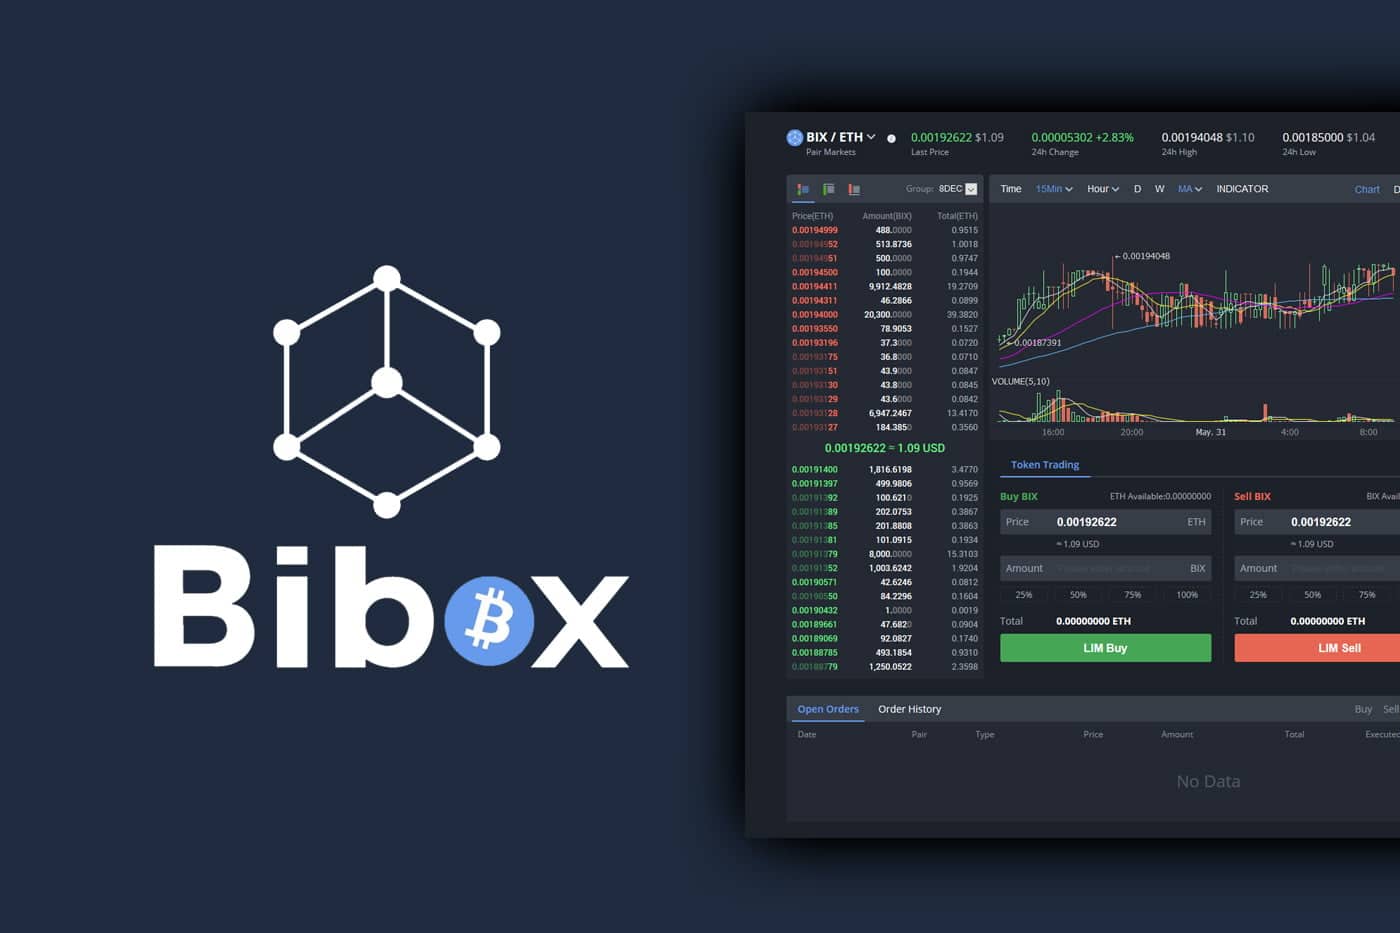 Bibox 2.0 yeni nesil borsa ile ne sunuyor?